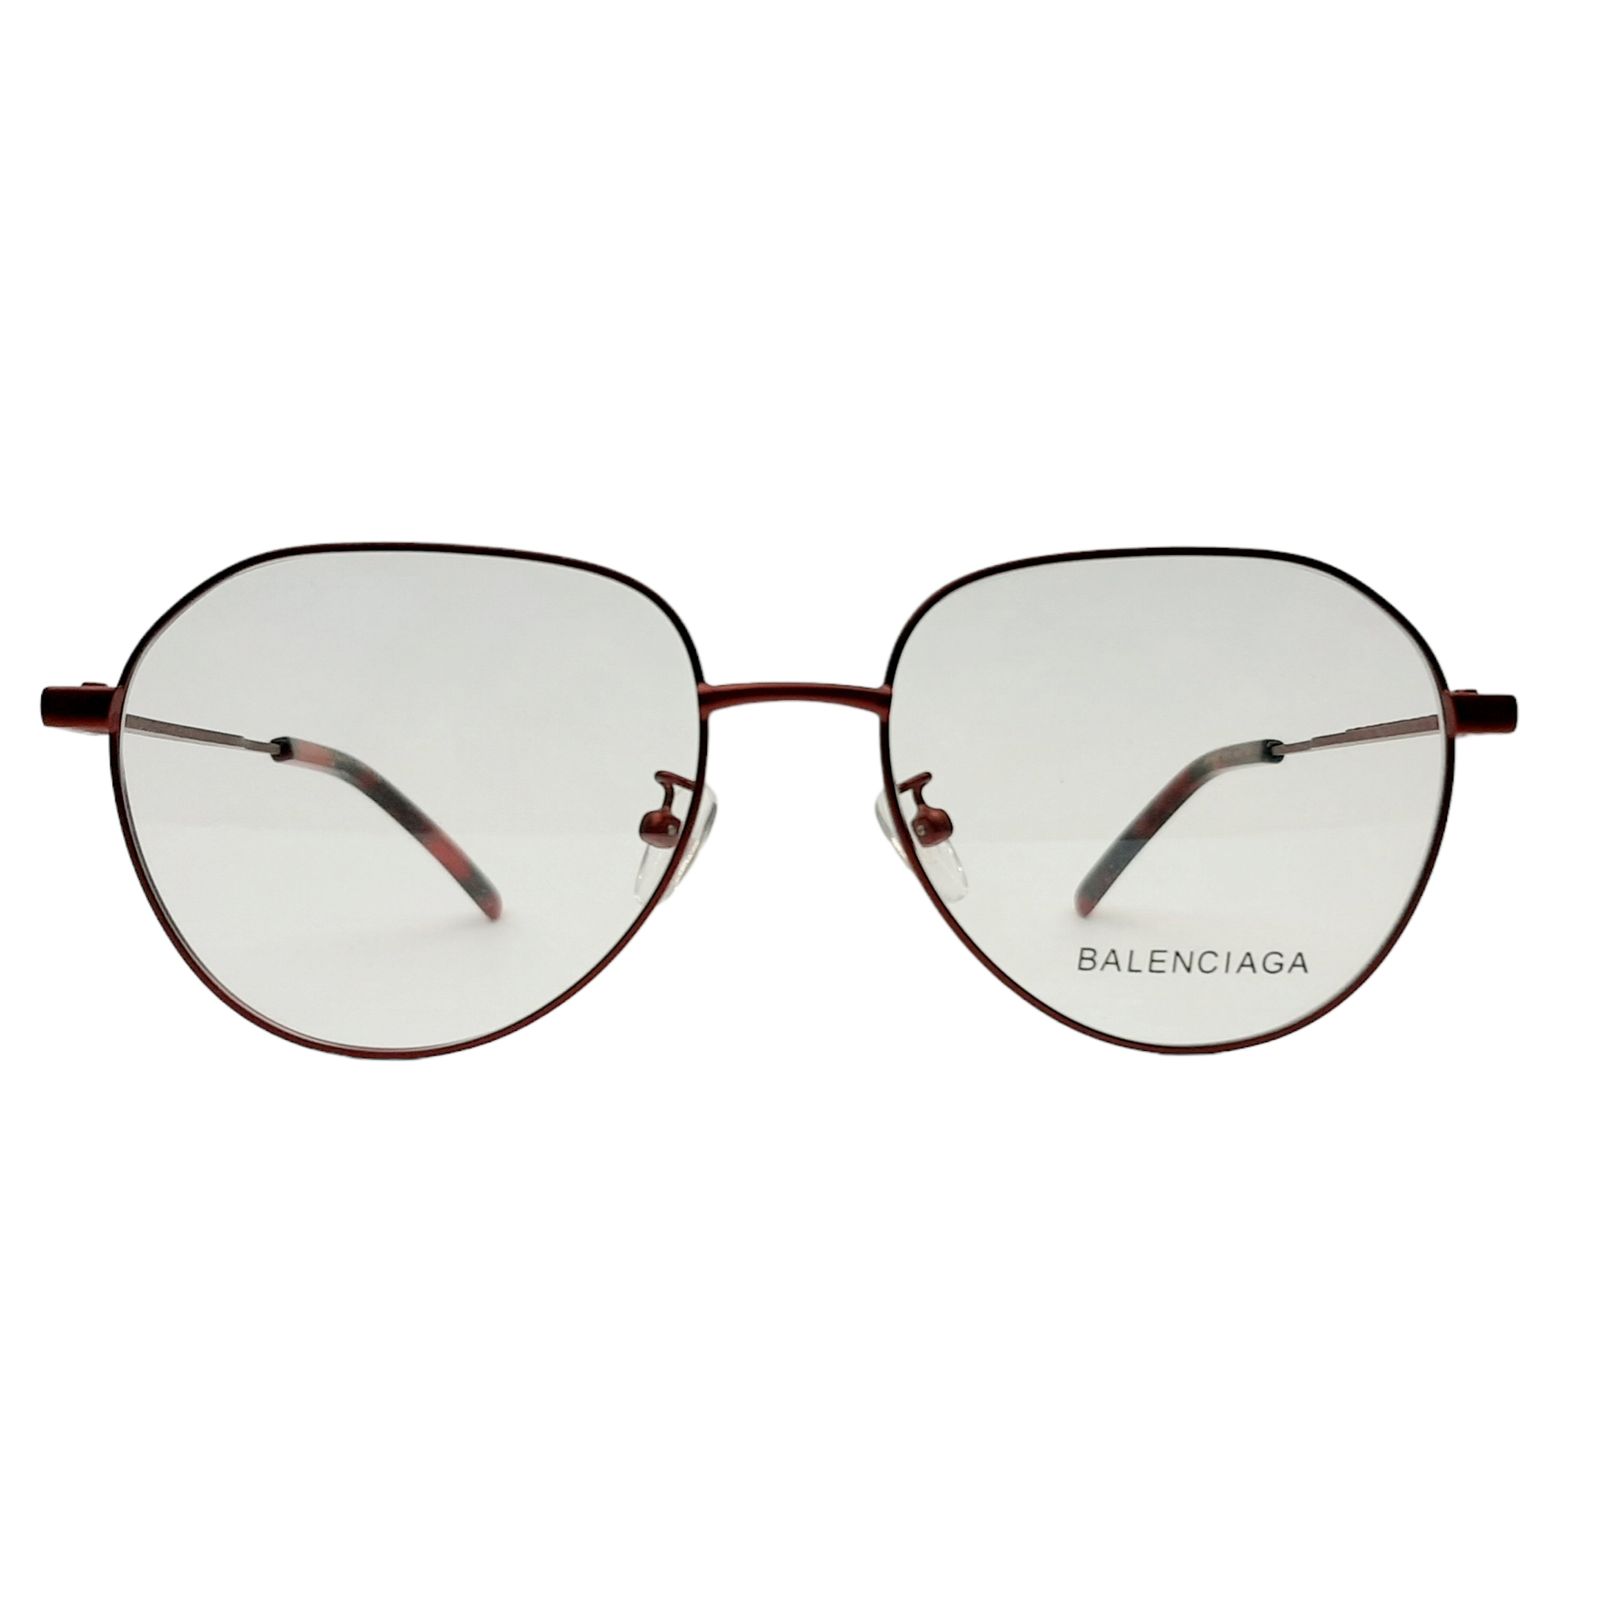 فریم عینک طبی بالنسیاگا مدل BB0168O-005c